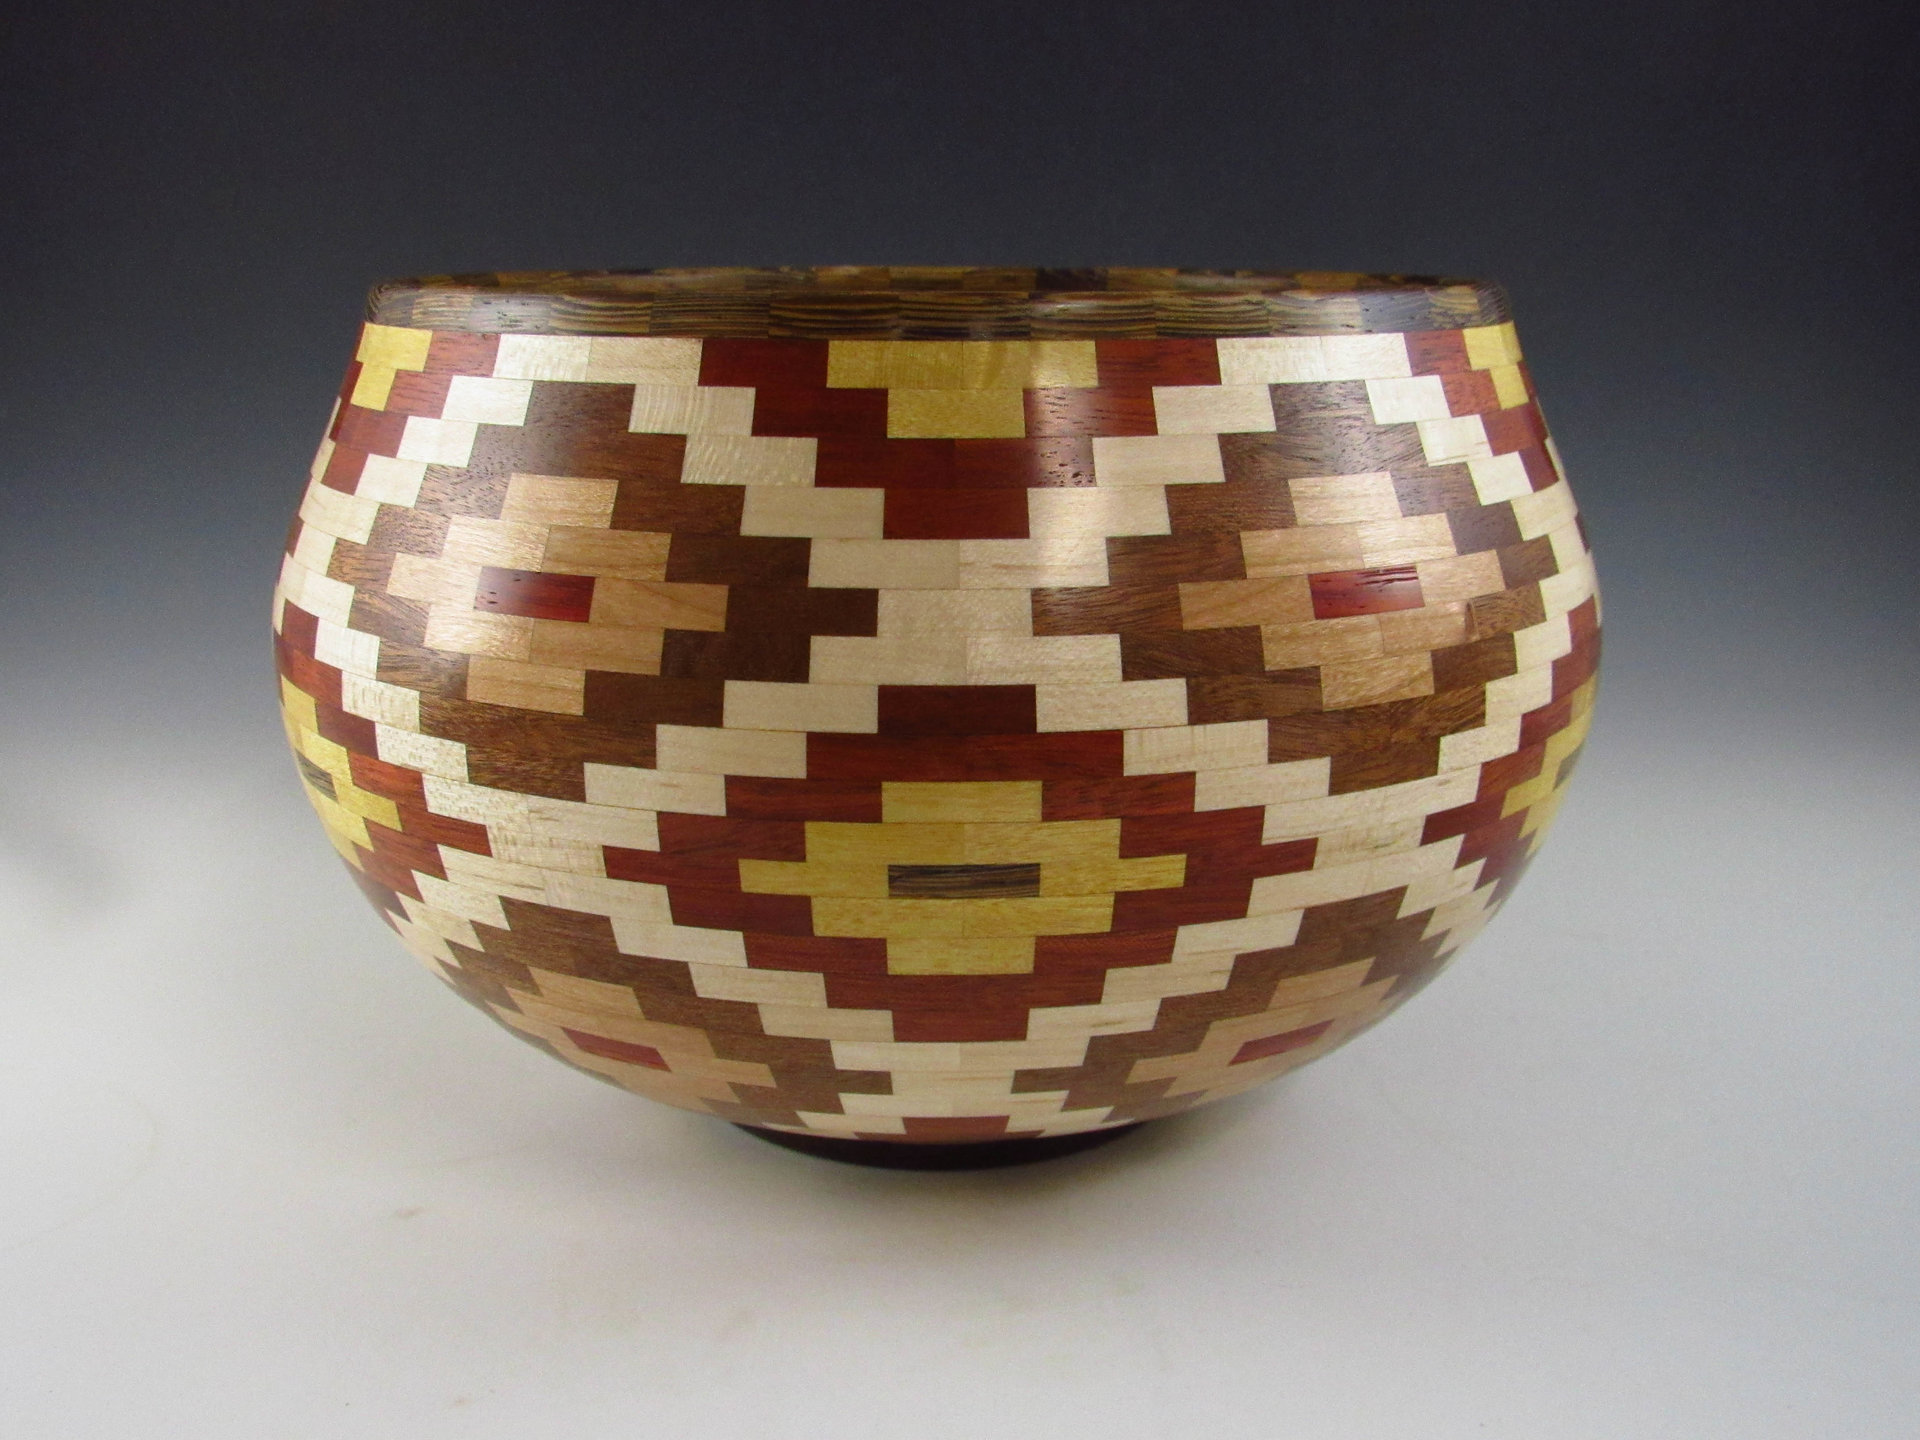 Segmented Multi-colored Bowl